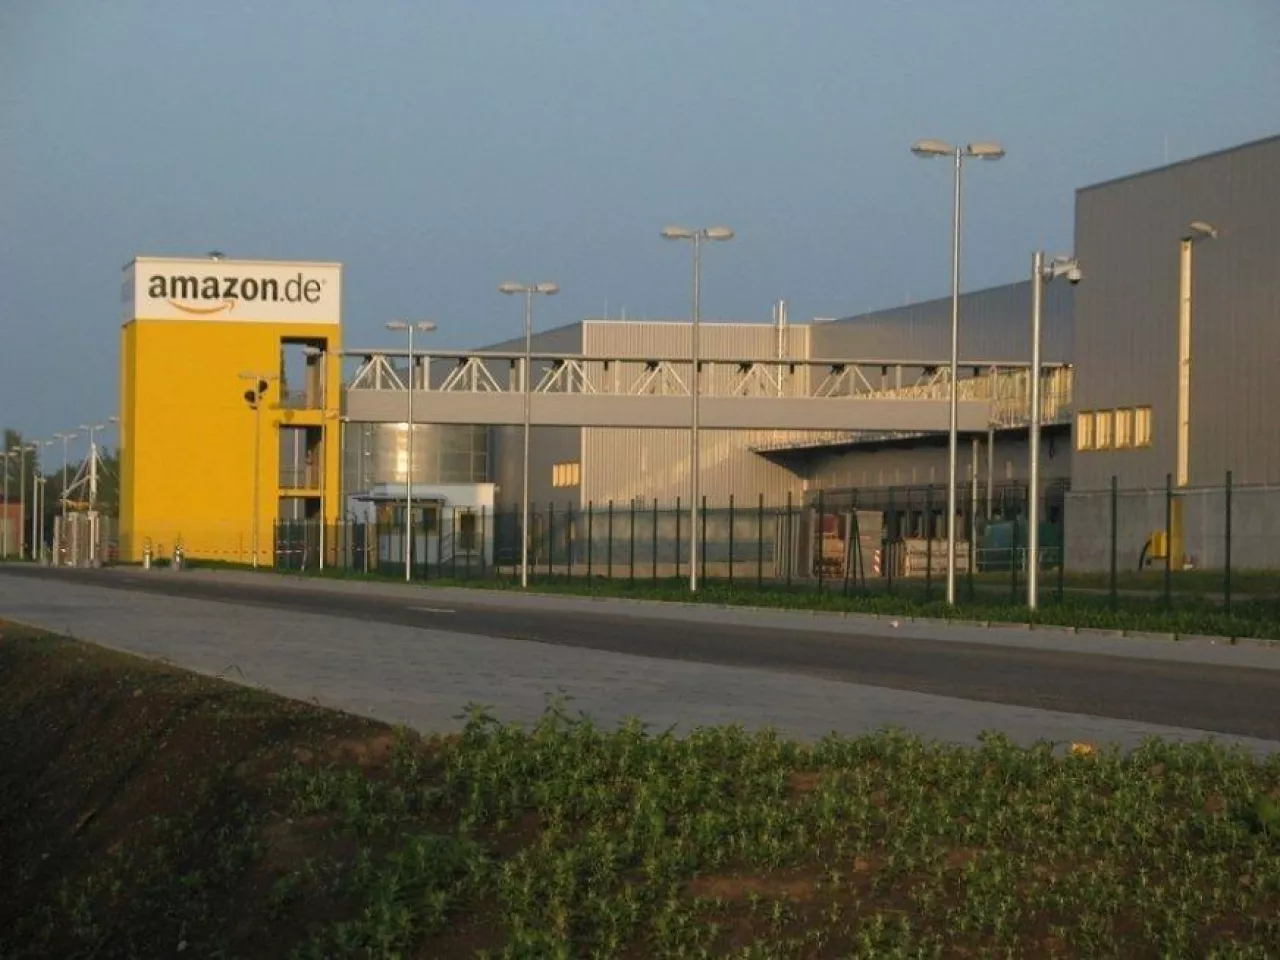 Centrum logistyczne Amazona w Lipsku (fot.  Medien-gbr, CC-BY-SA 3.0)